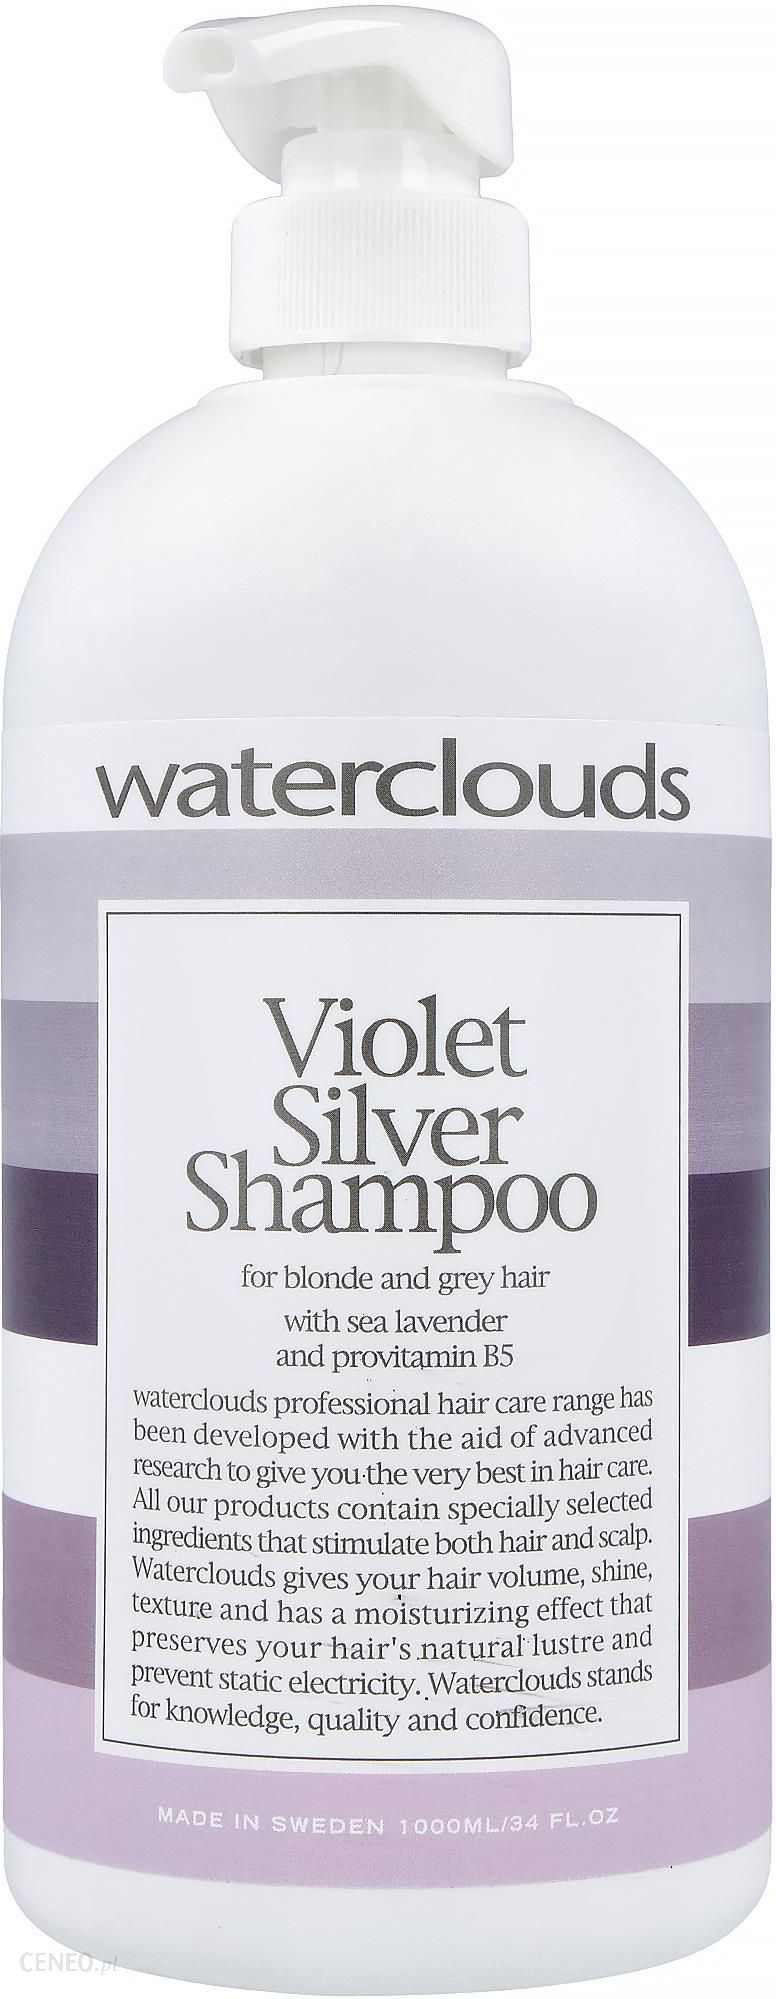 waterclouds szampon violet opinie